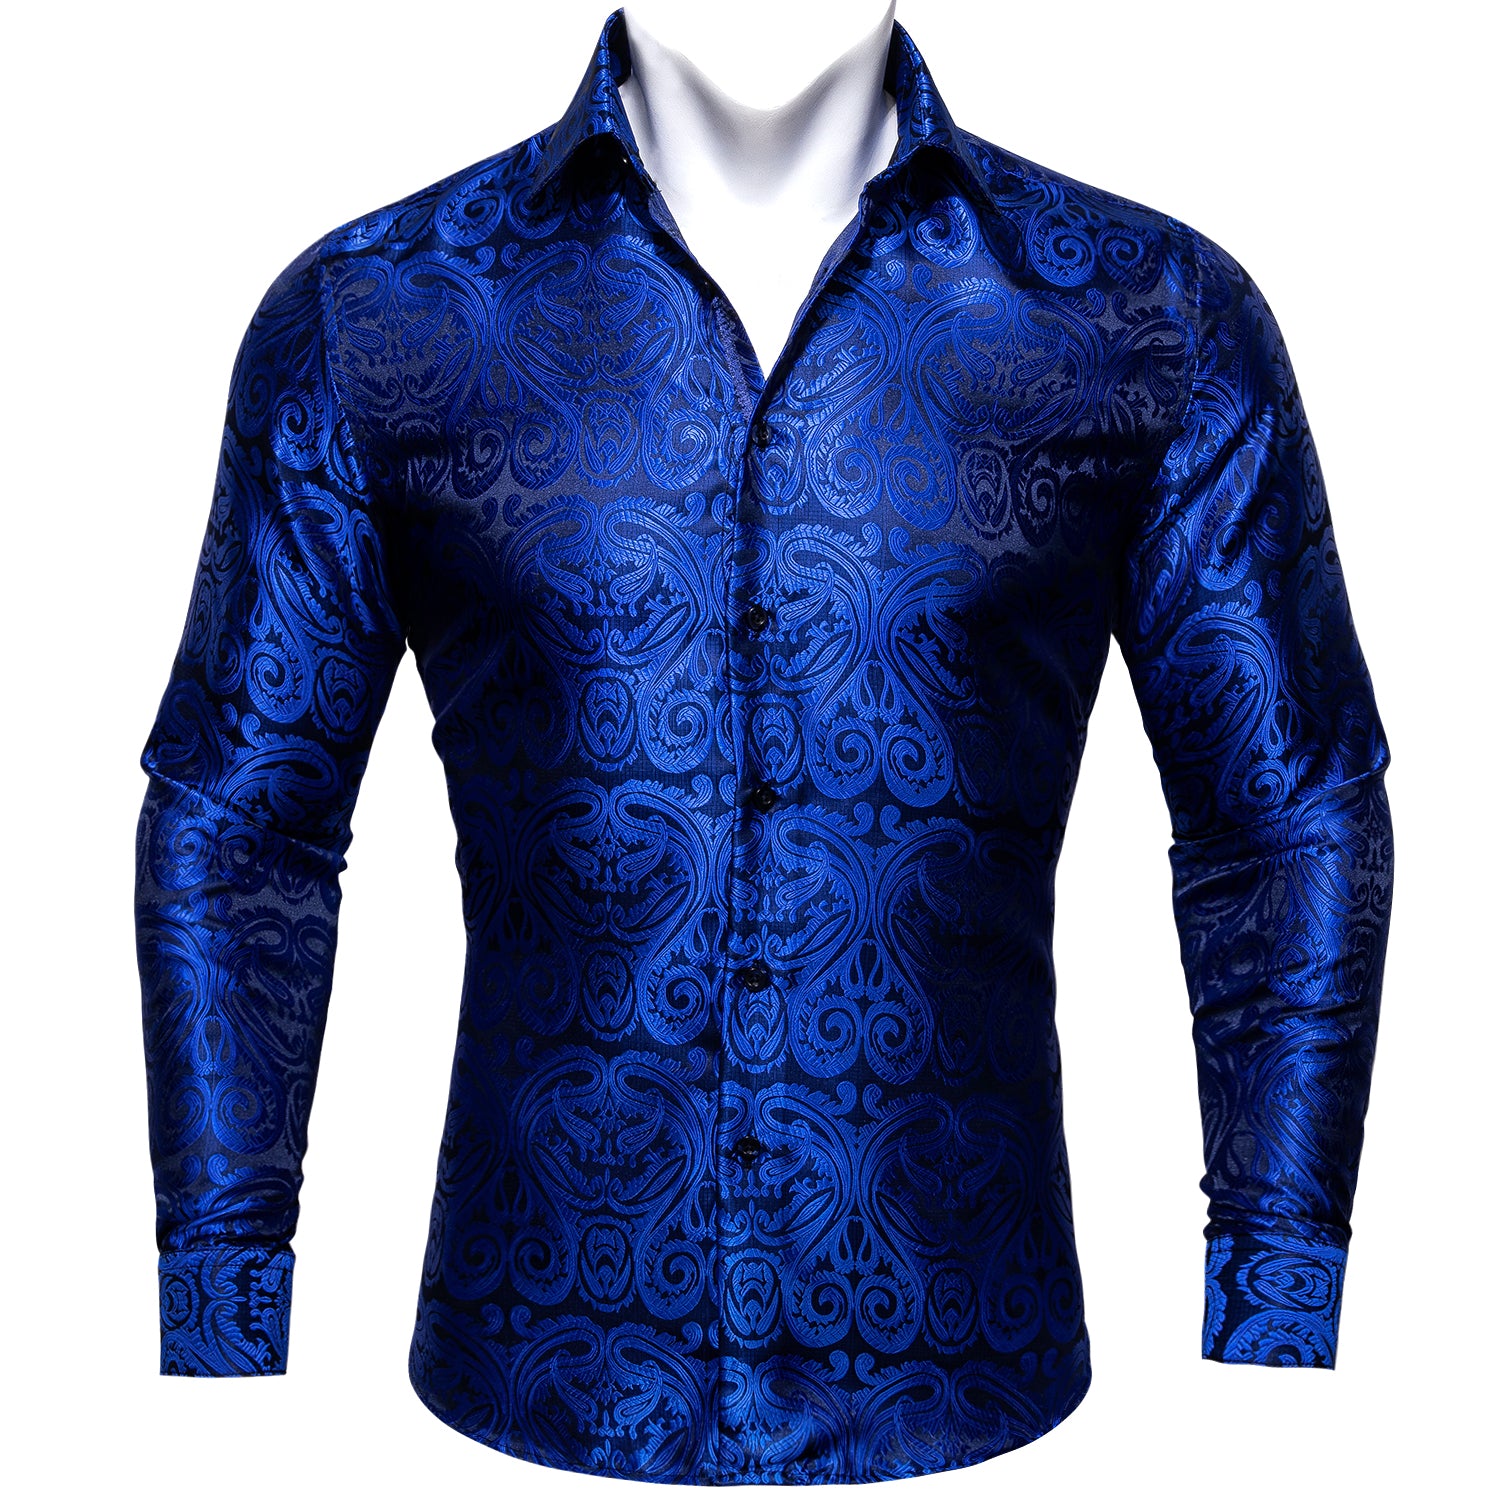 Dark blue mens casual button down shirts